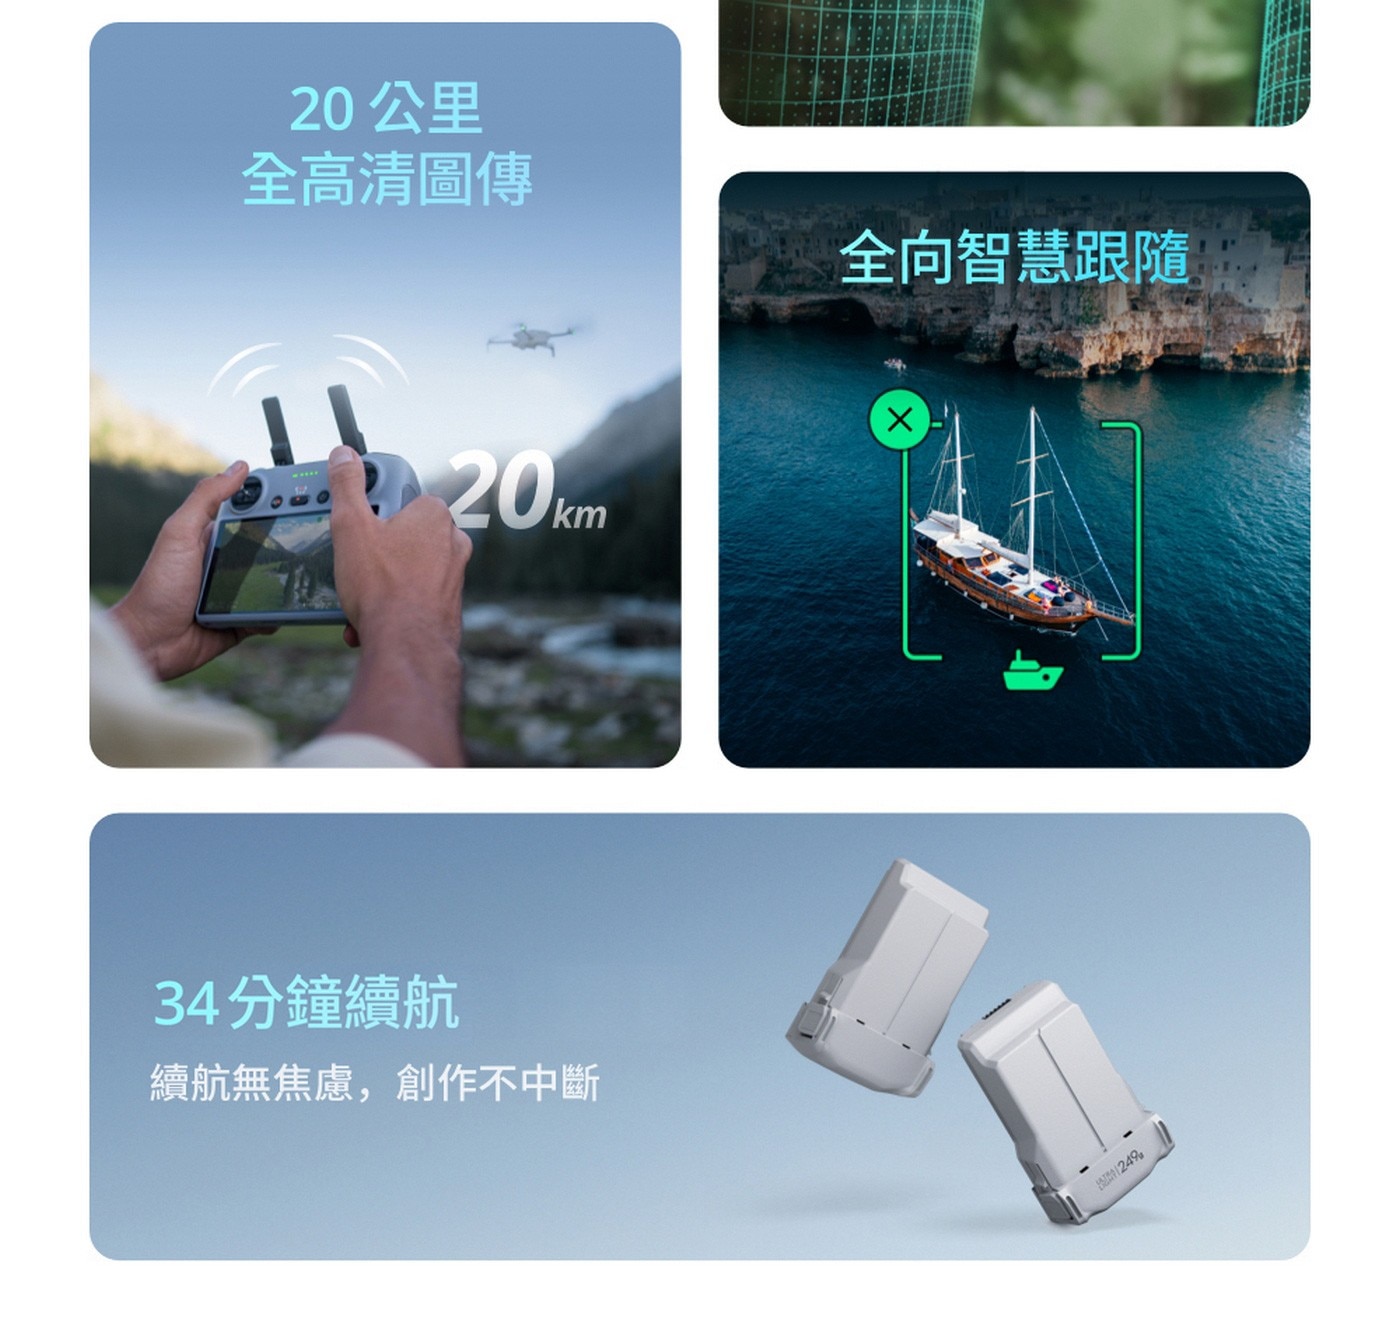 DJI Mini 4 Pro 空拍機雙電池組合，可折疊，輕巧隨身帶，全向主動避障，飛行更安全，數位變焦，智慧功能升級，秒出大片。